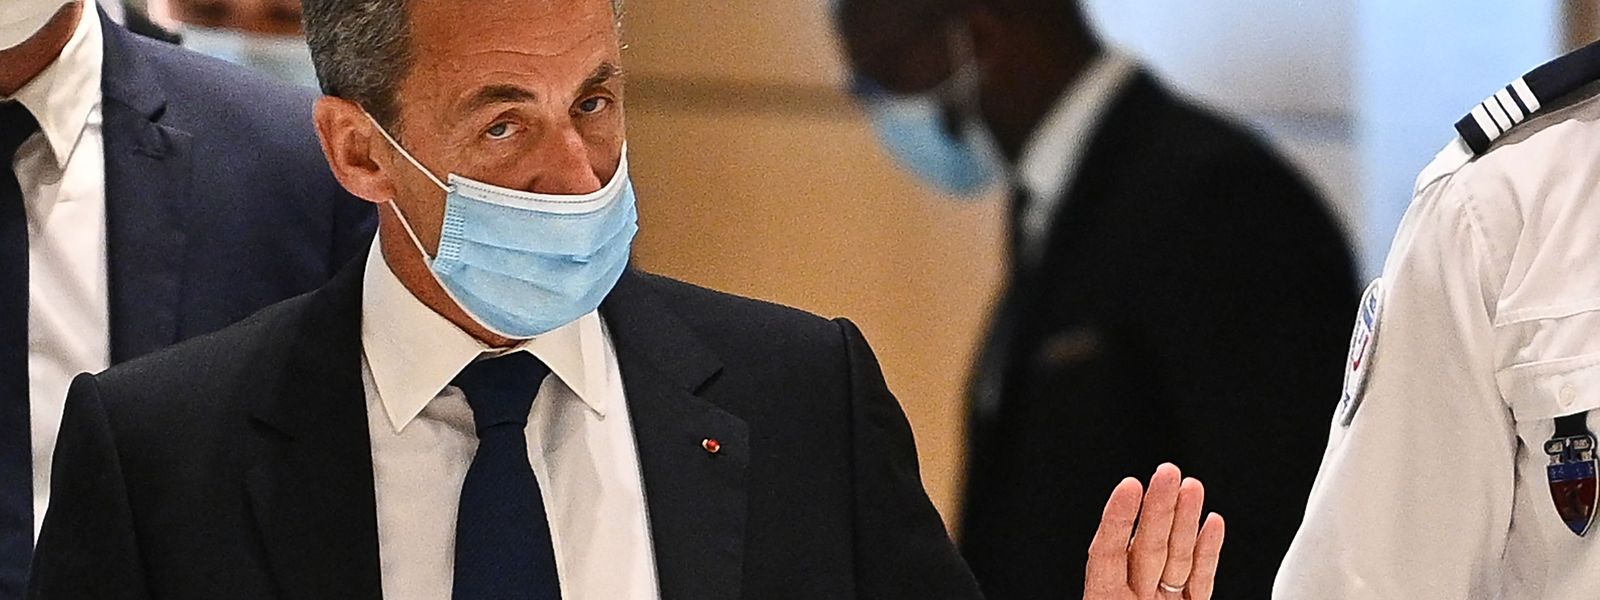 Nicolas Sarkozy a de nouveau rendez-vous devant les juges, le 17 mars, dans l'affaire Bygmalion sur le financement de sa campagne présidentielle 2012.